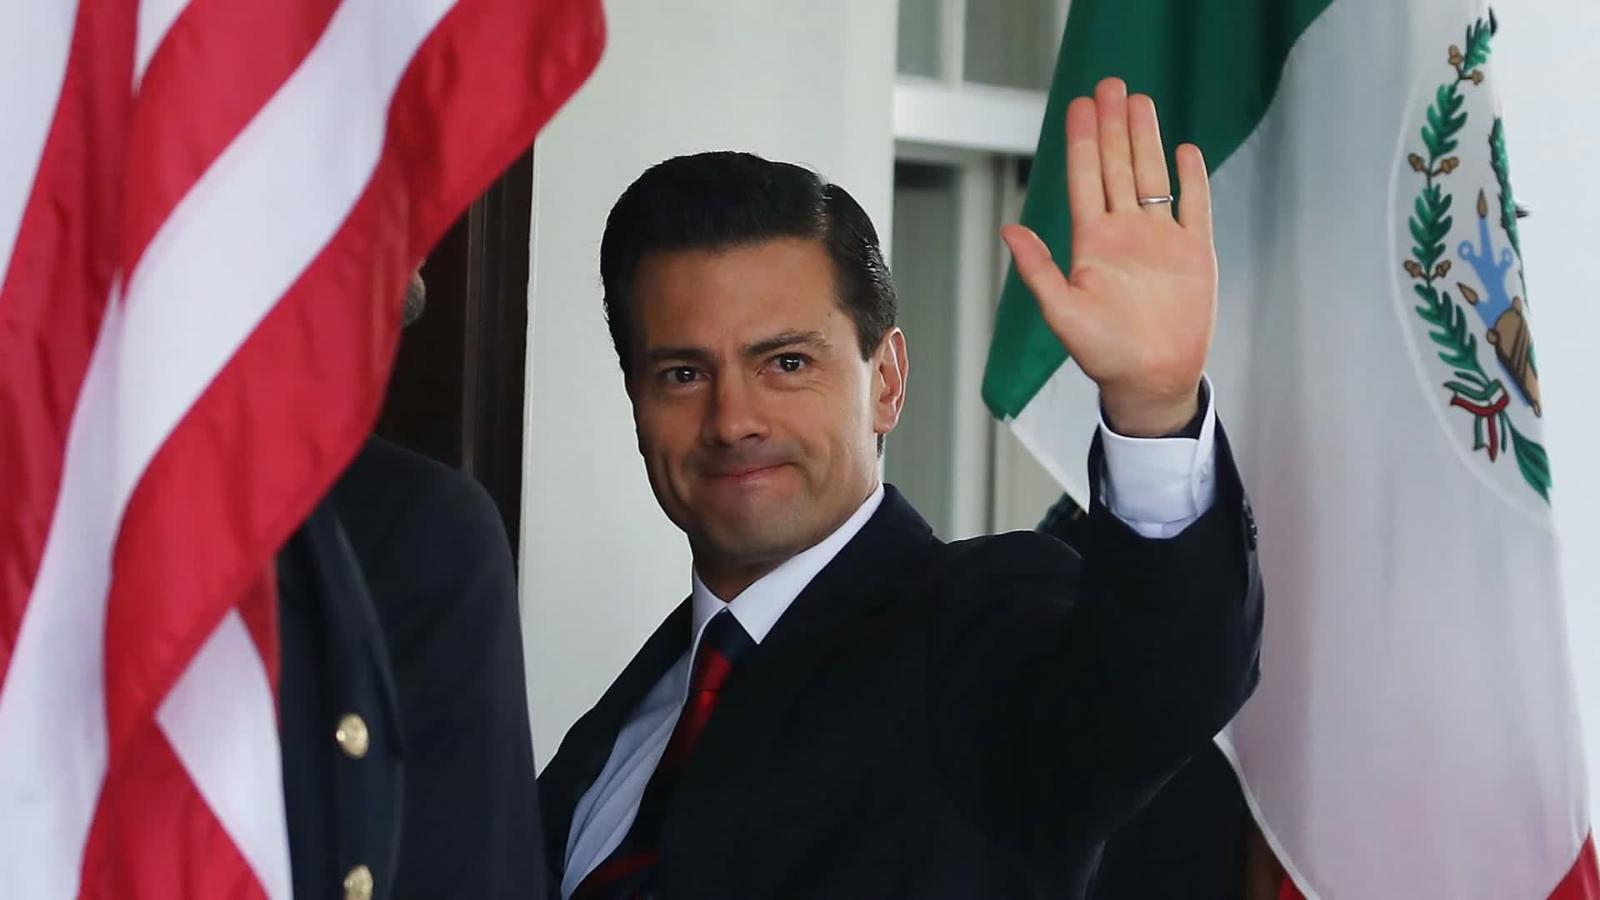 Si me citan, voy a declarar: Enrique Peña Nieto